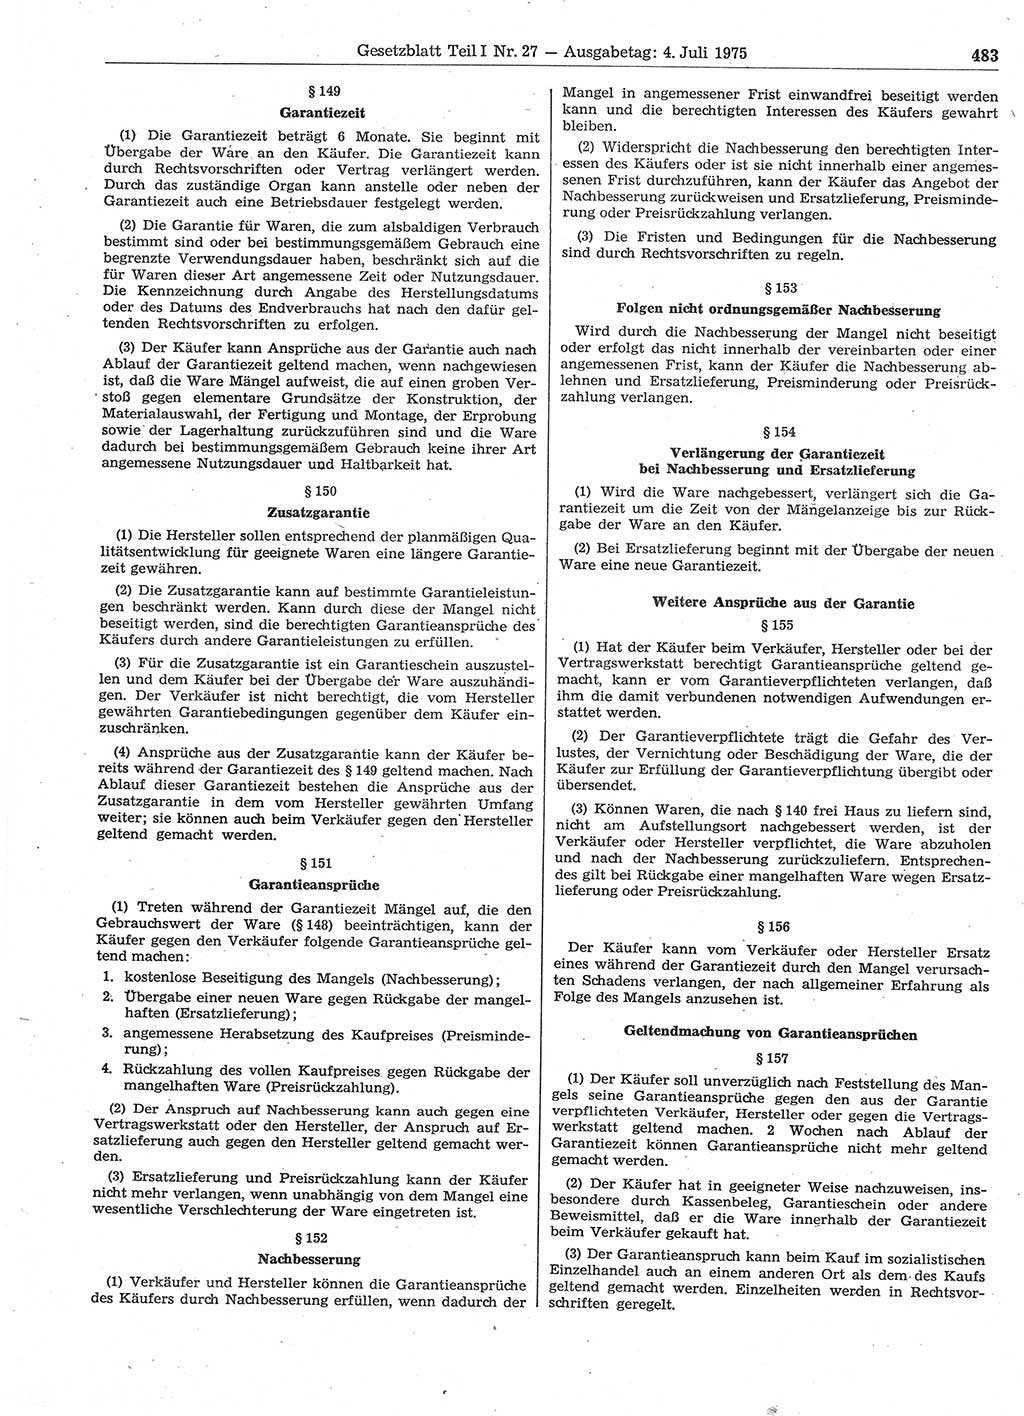 Gesetzblatt (GBl.) der Deutschen Demokratischen Republik (DDR) Teil Ⅰ 1975, Seite 483 (GBl. DDR Ⅰ 1975, S. 483)